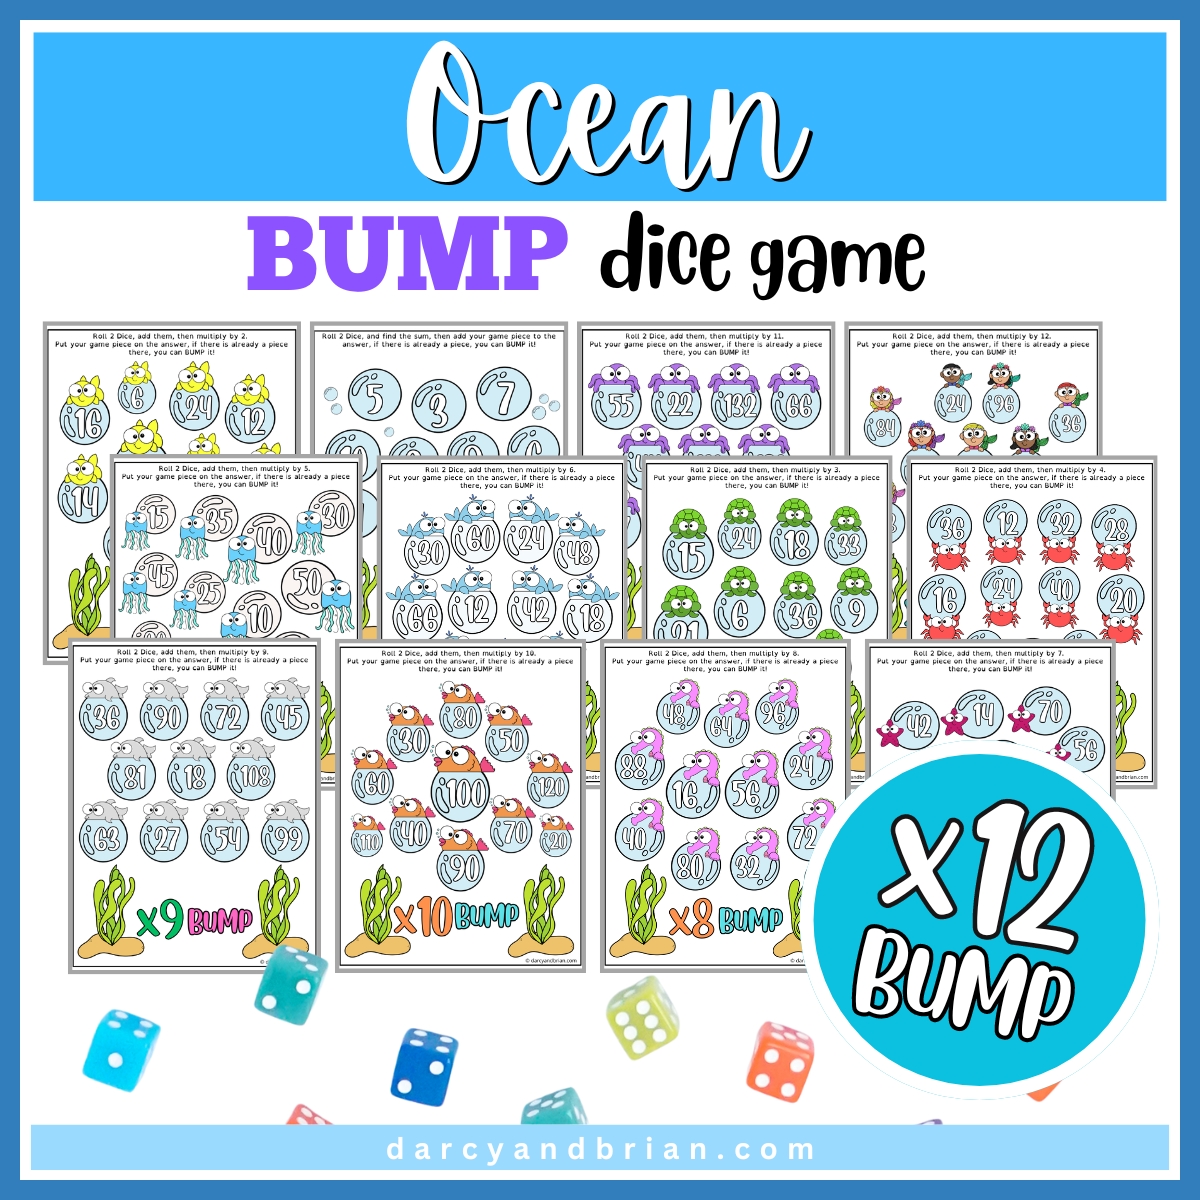 Ocean Bump Dice Game